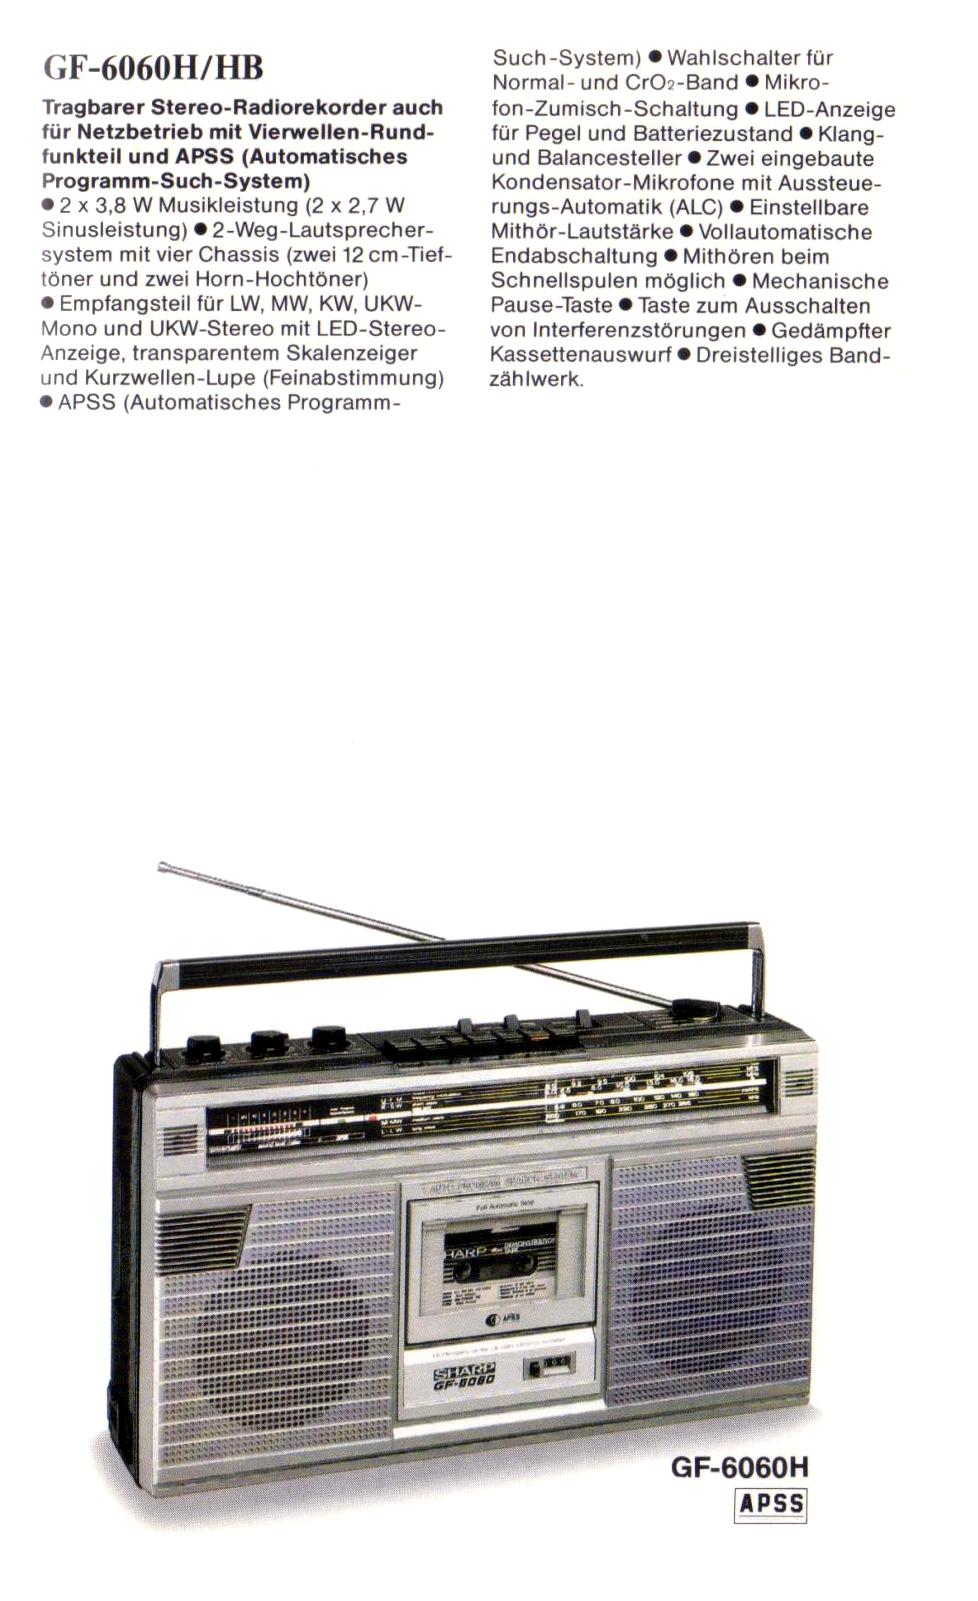 Sharp GF-6060-Prospekt-1981.jpg